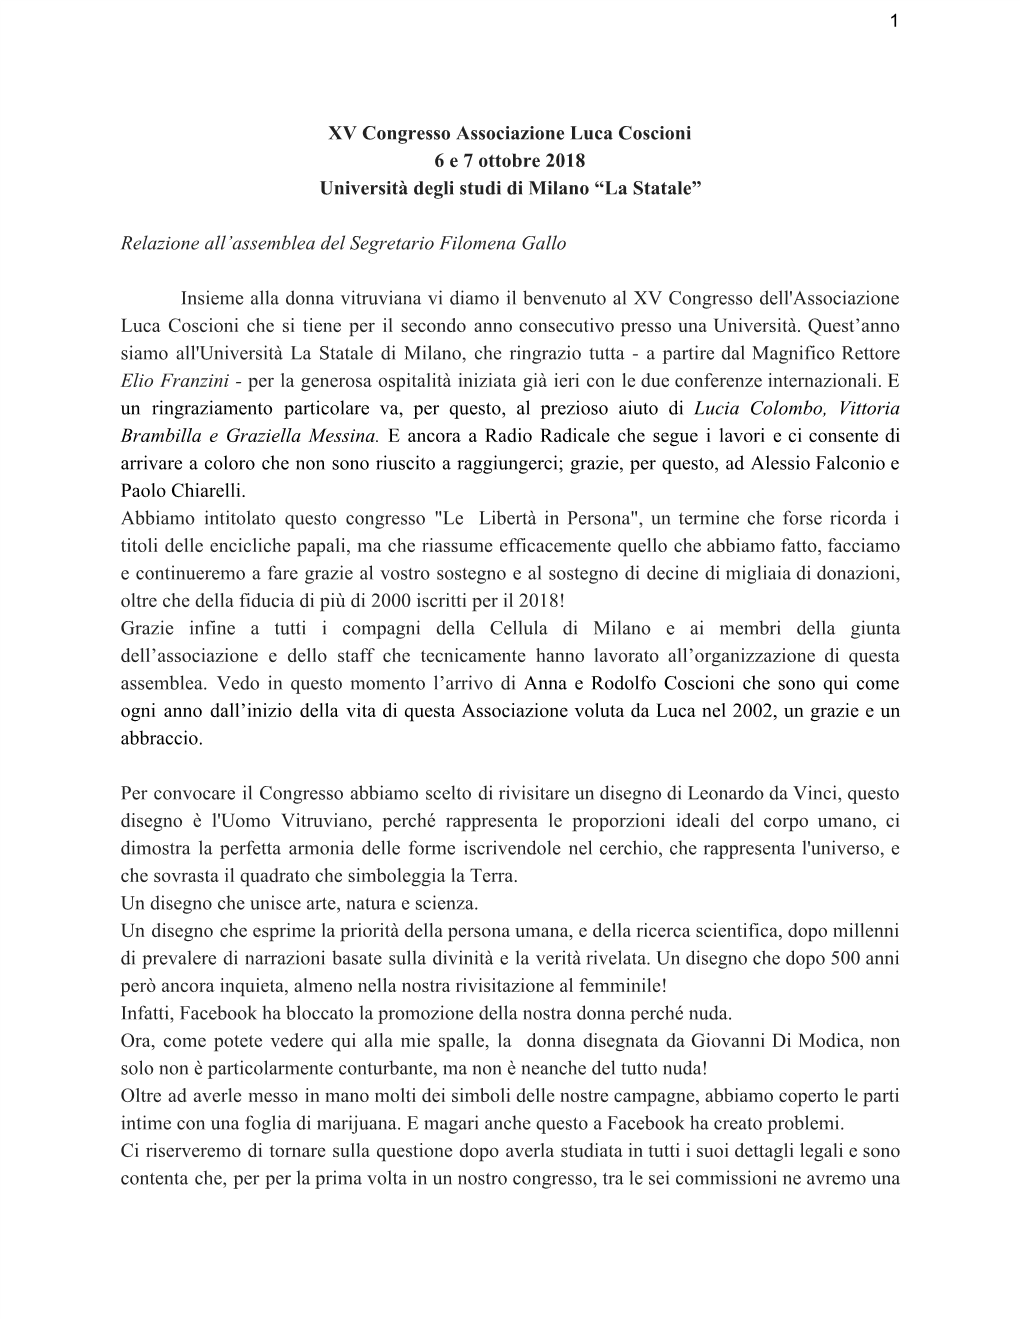 XV Congresso Associazione Luca Coscioni 6 E 7 Ottobre 2018 Università Degli Studi Di Milano “La Statale”